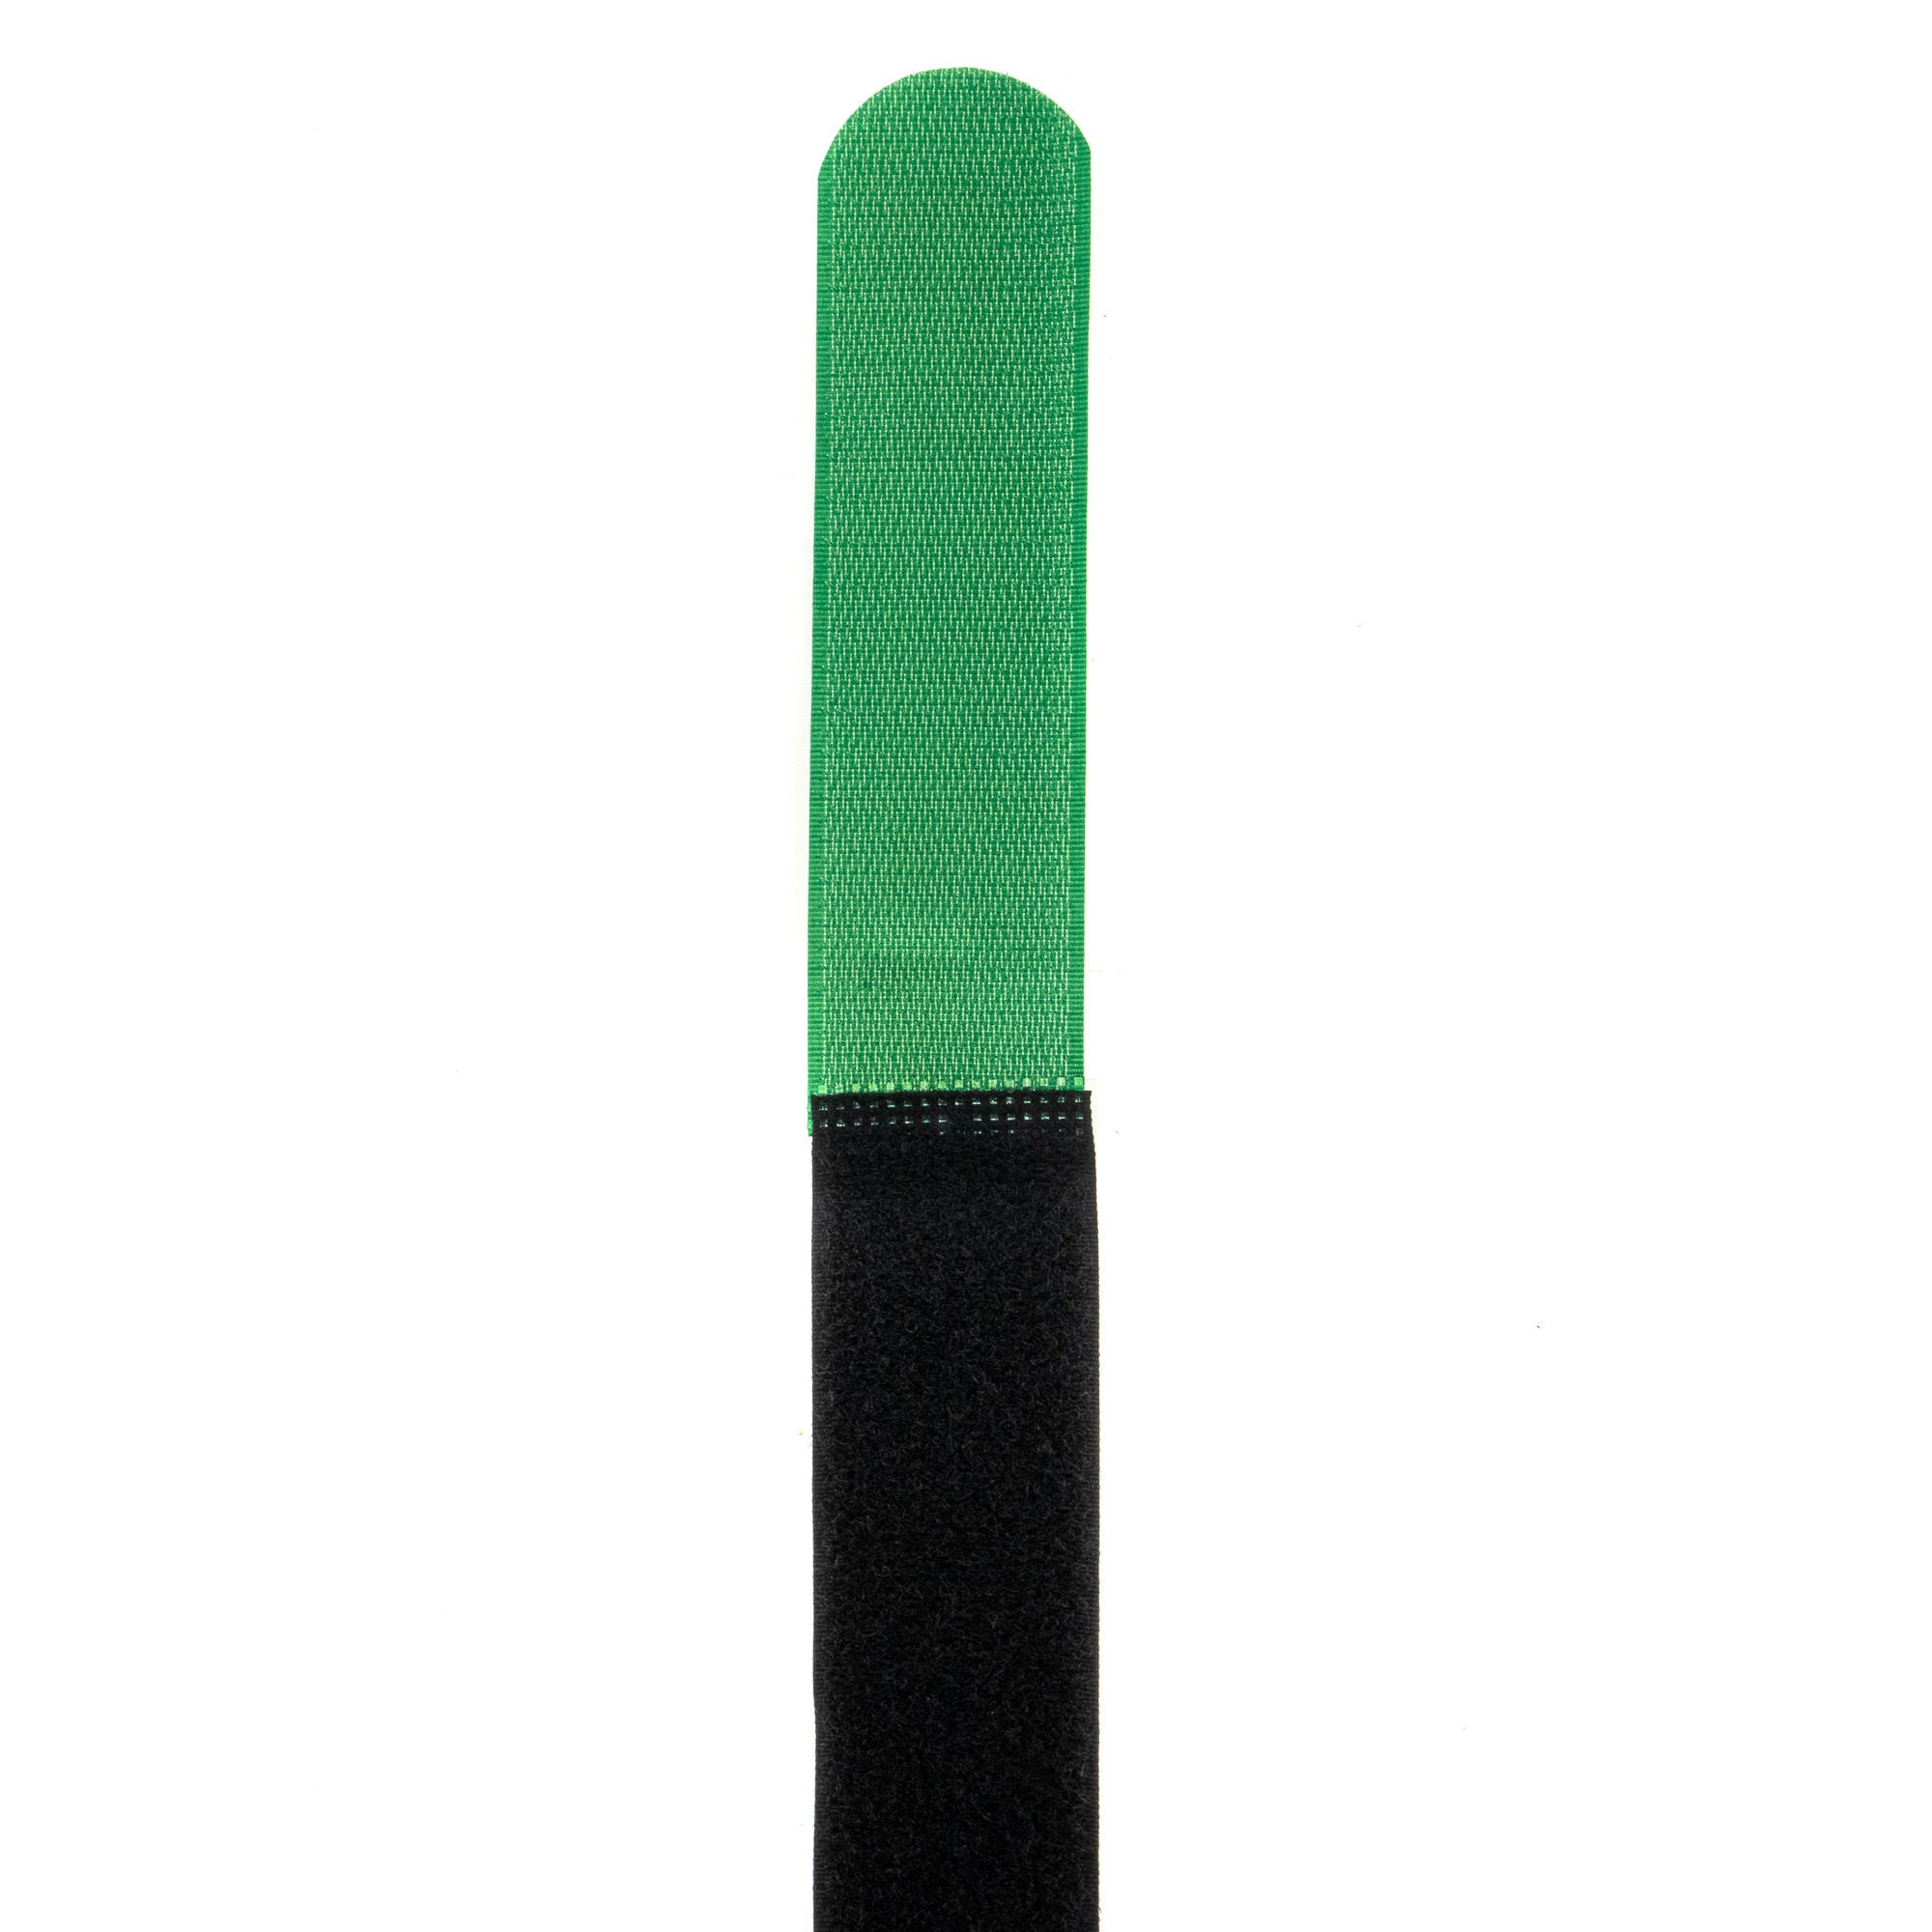 Klettbinder 600x38, schwarz/grün, 10Stk.